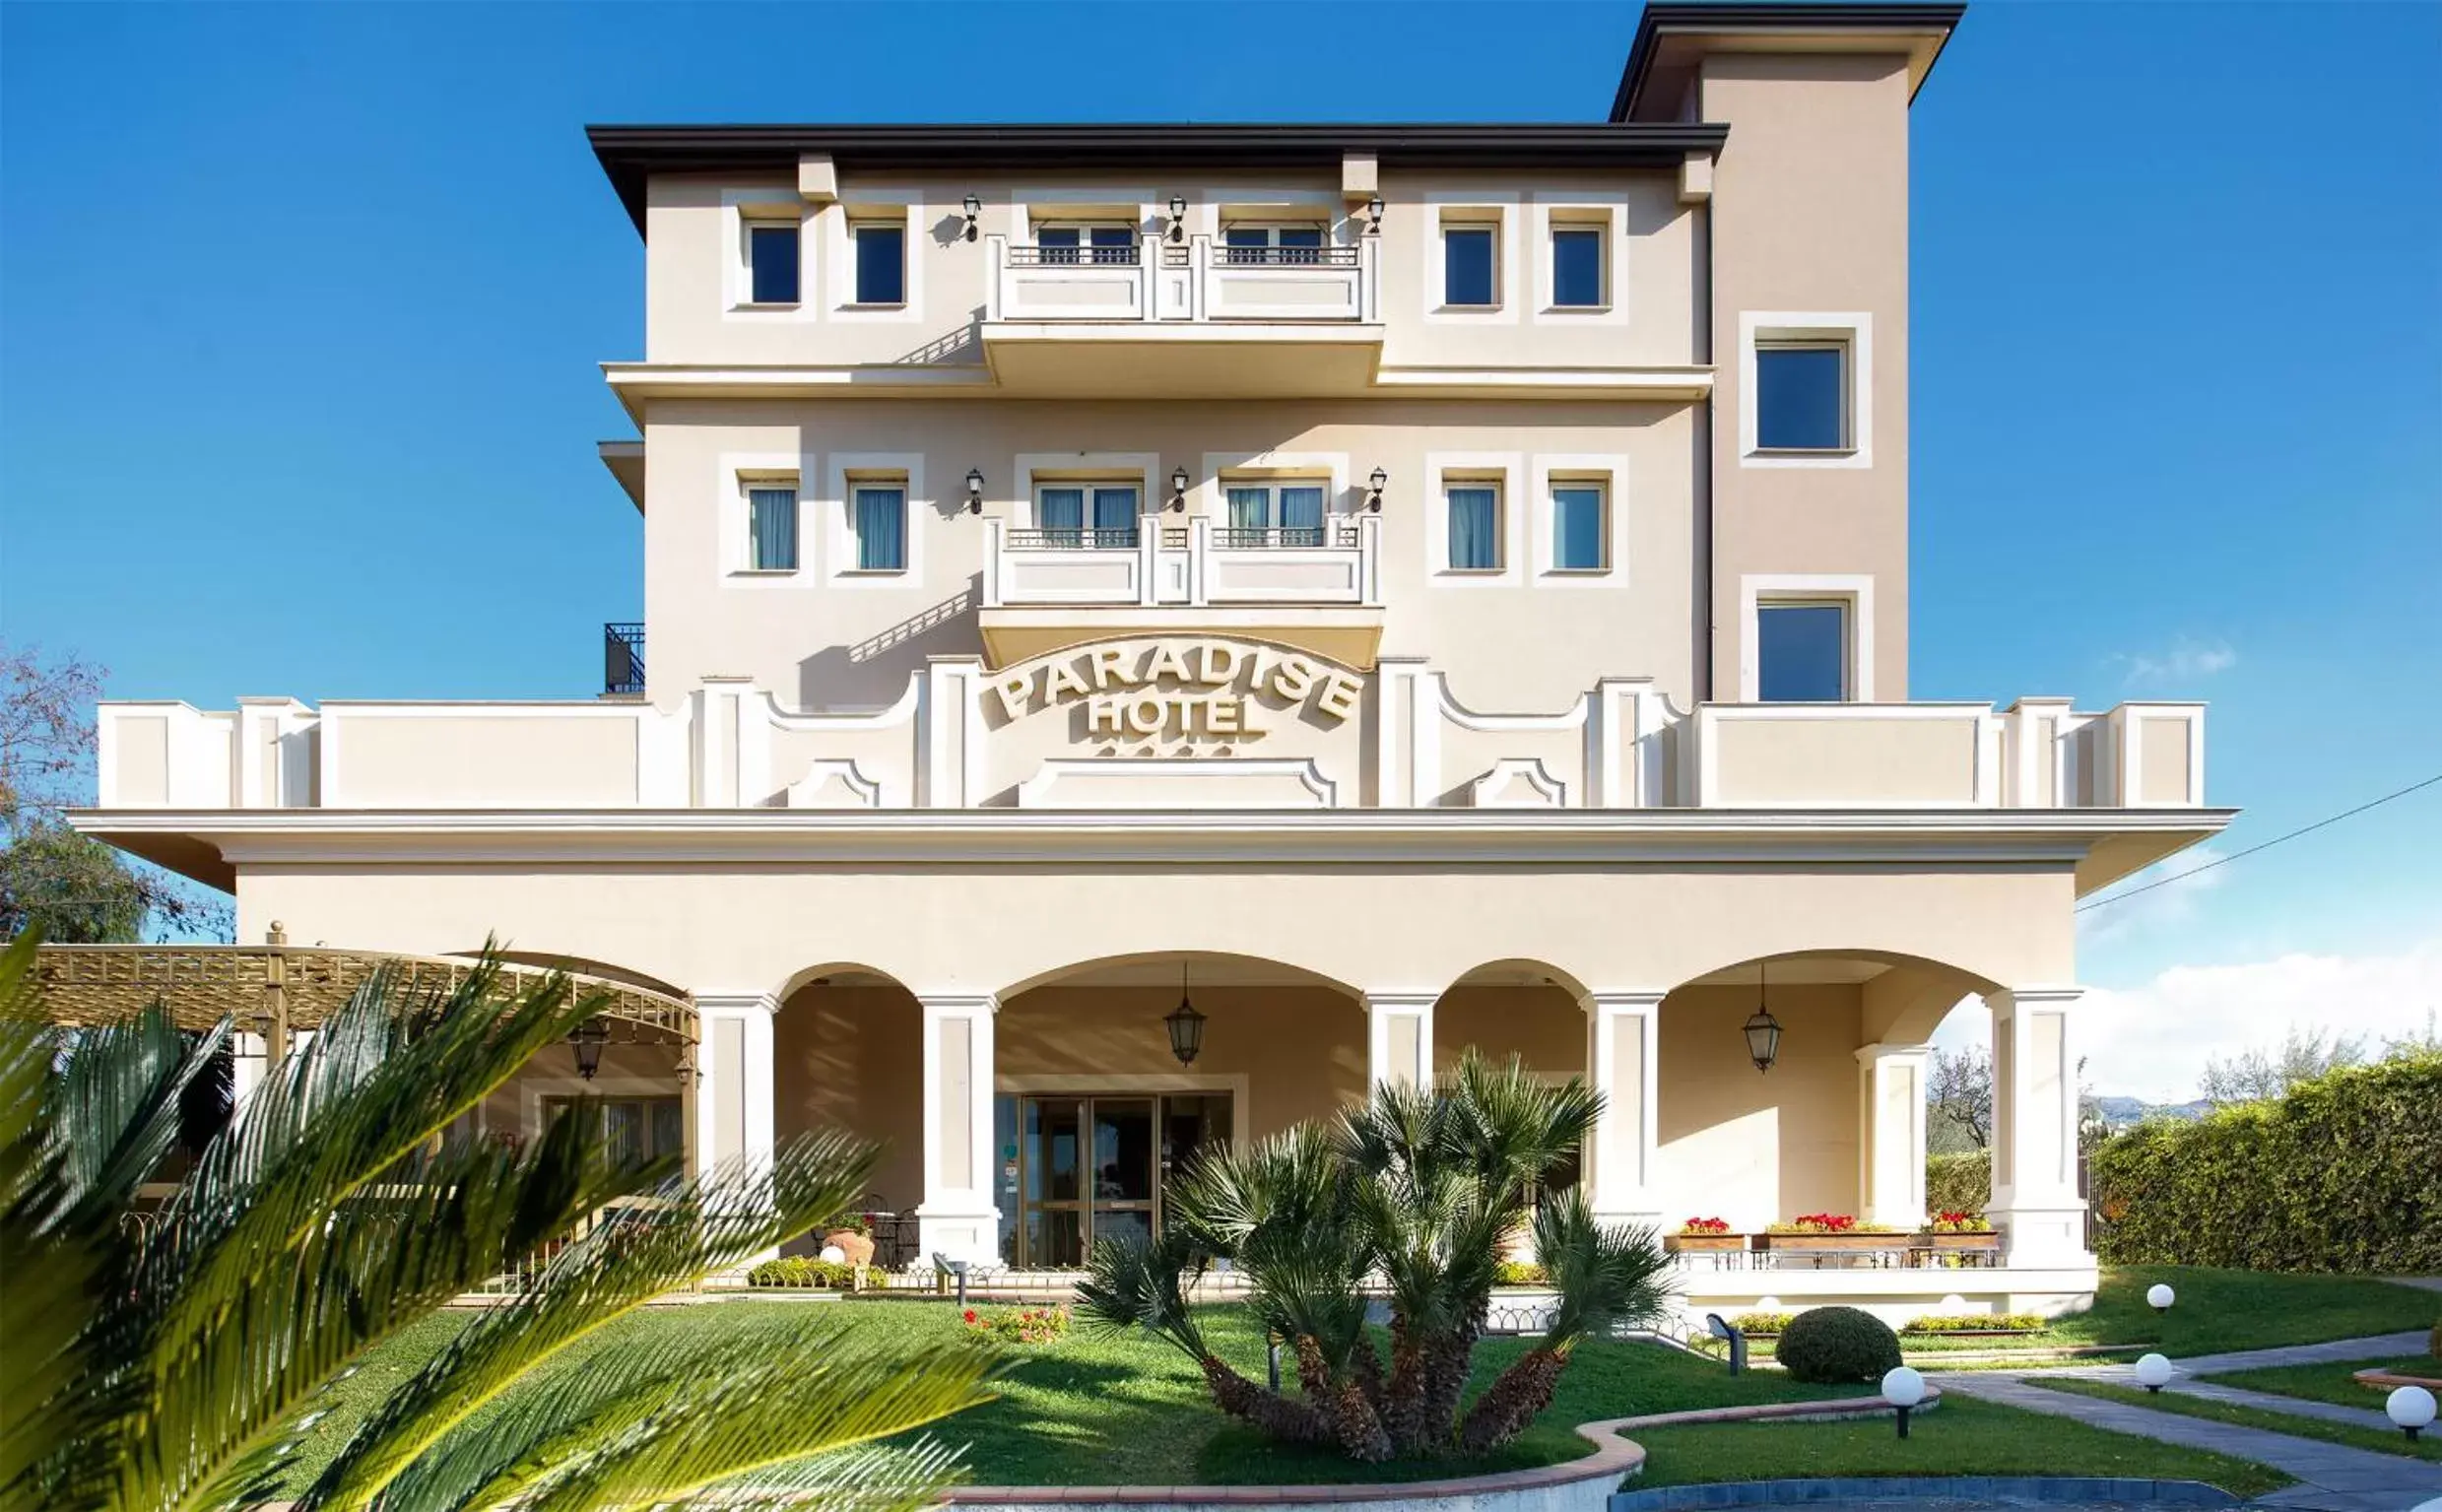 Facade/entrance, Property Building in Hotel Ristorante Paradise